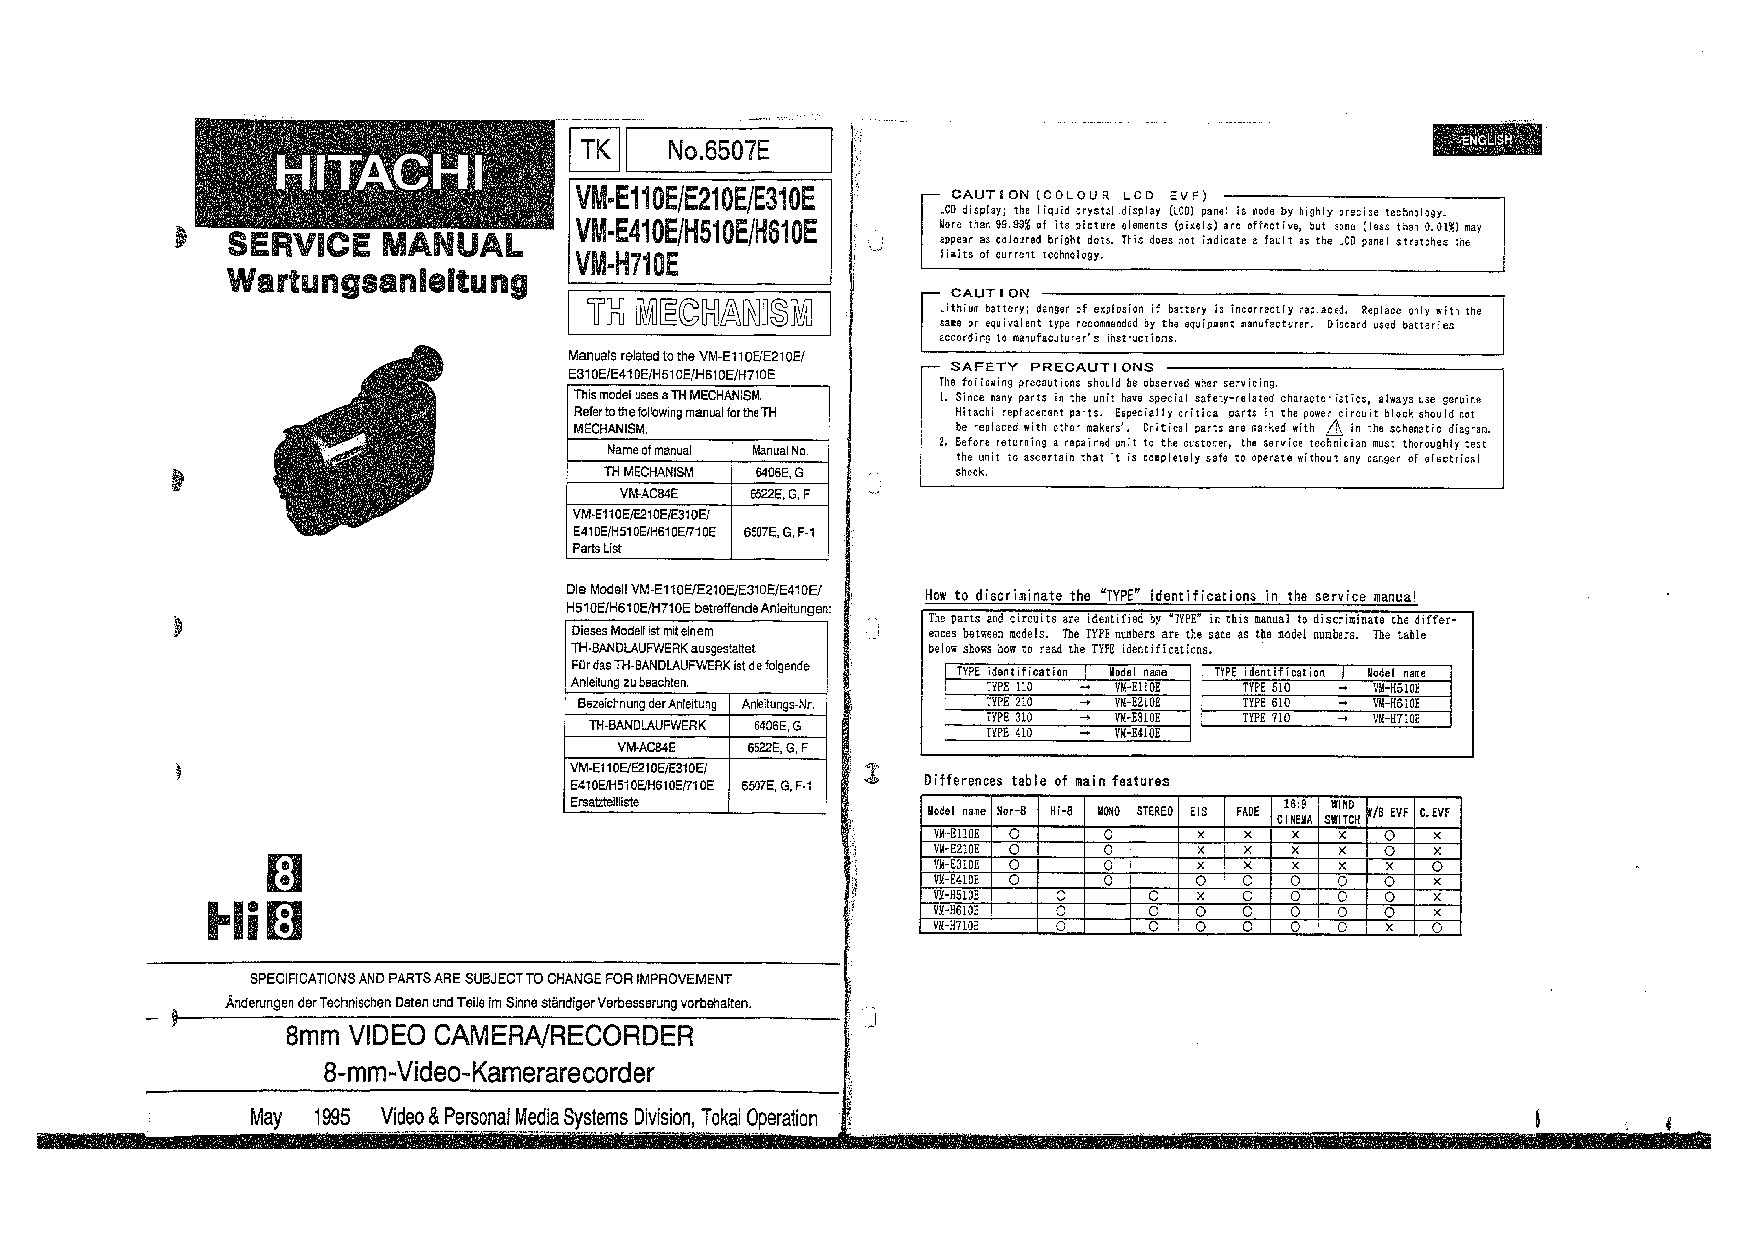 Hitachi E310E, E210E, H610E, VM-E110E, VM-E410E User Manual